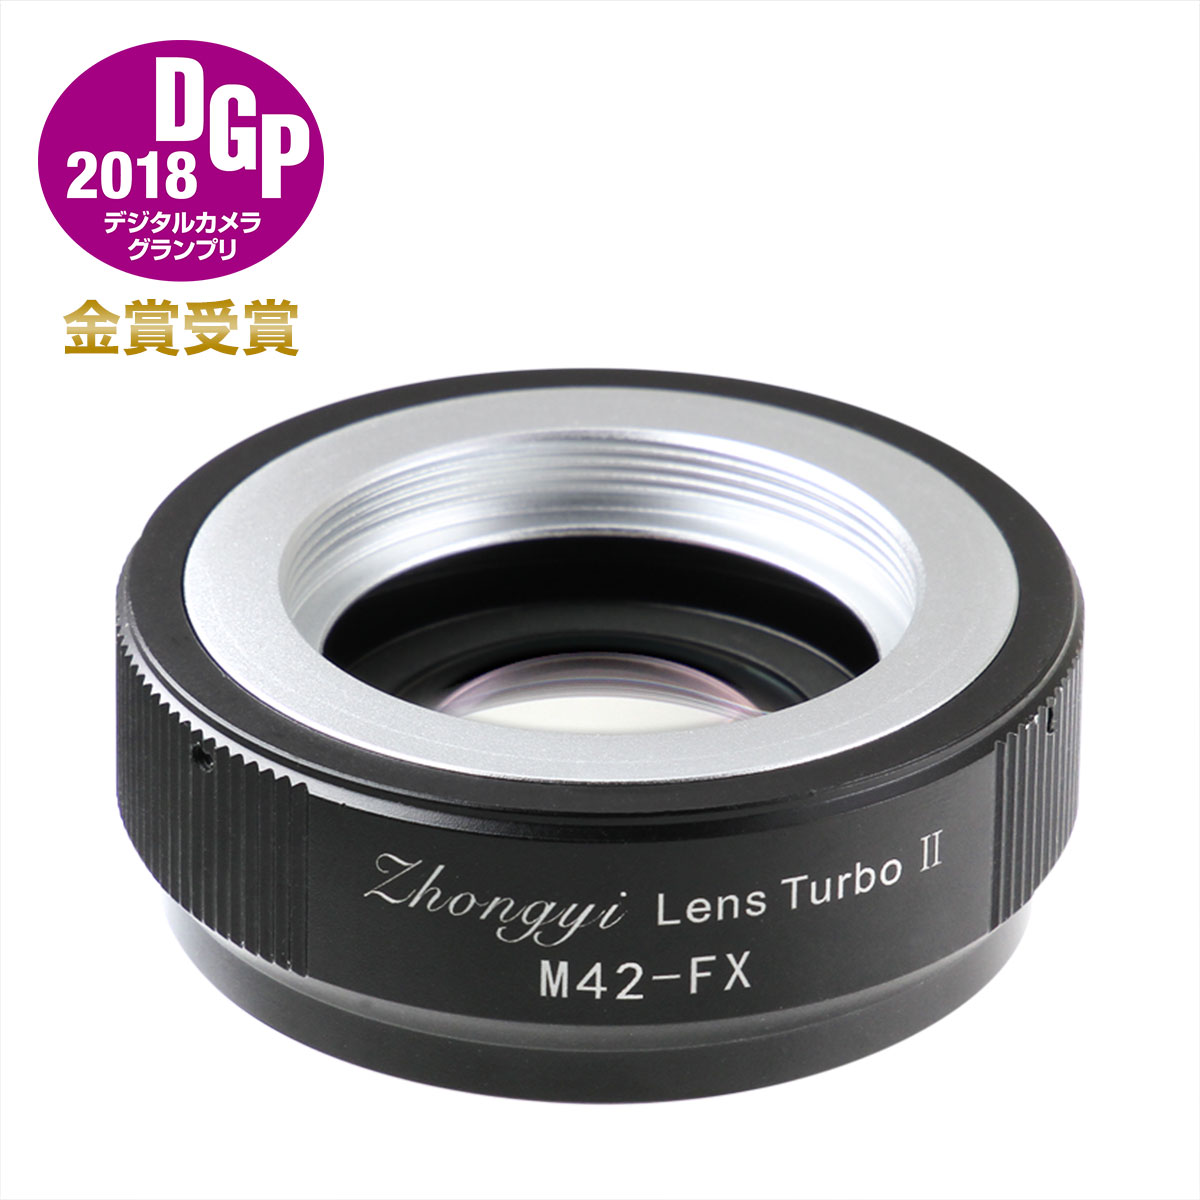 楽天市場】中一光学 Lens Turbo II M42-FX M42マウントレンズ - 富士